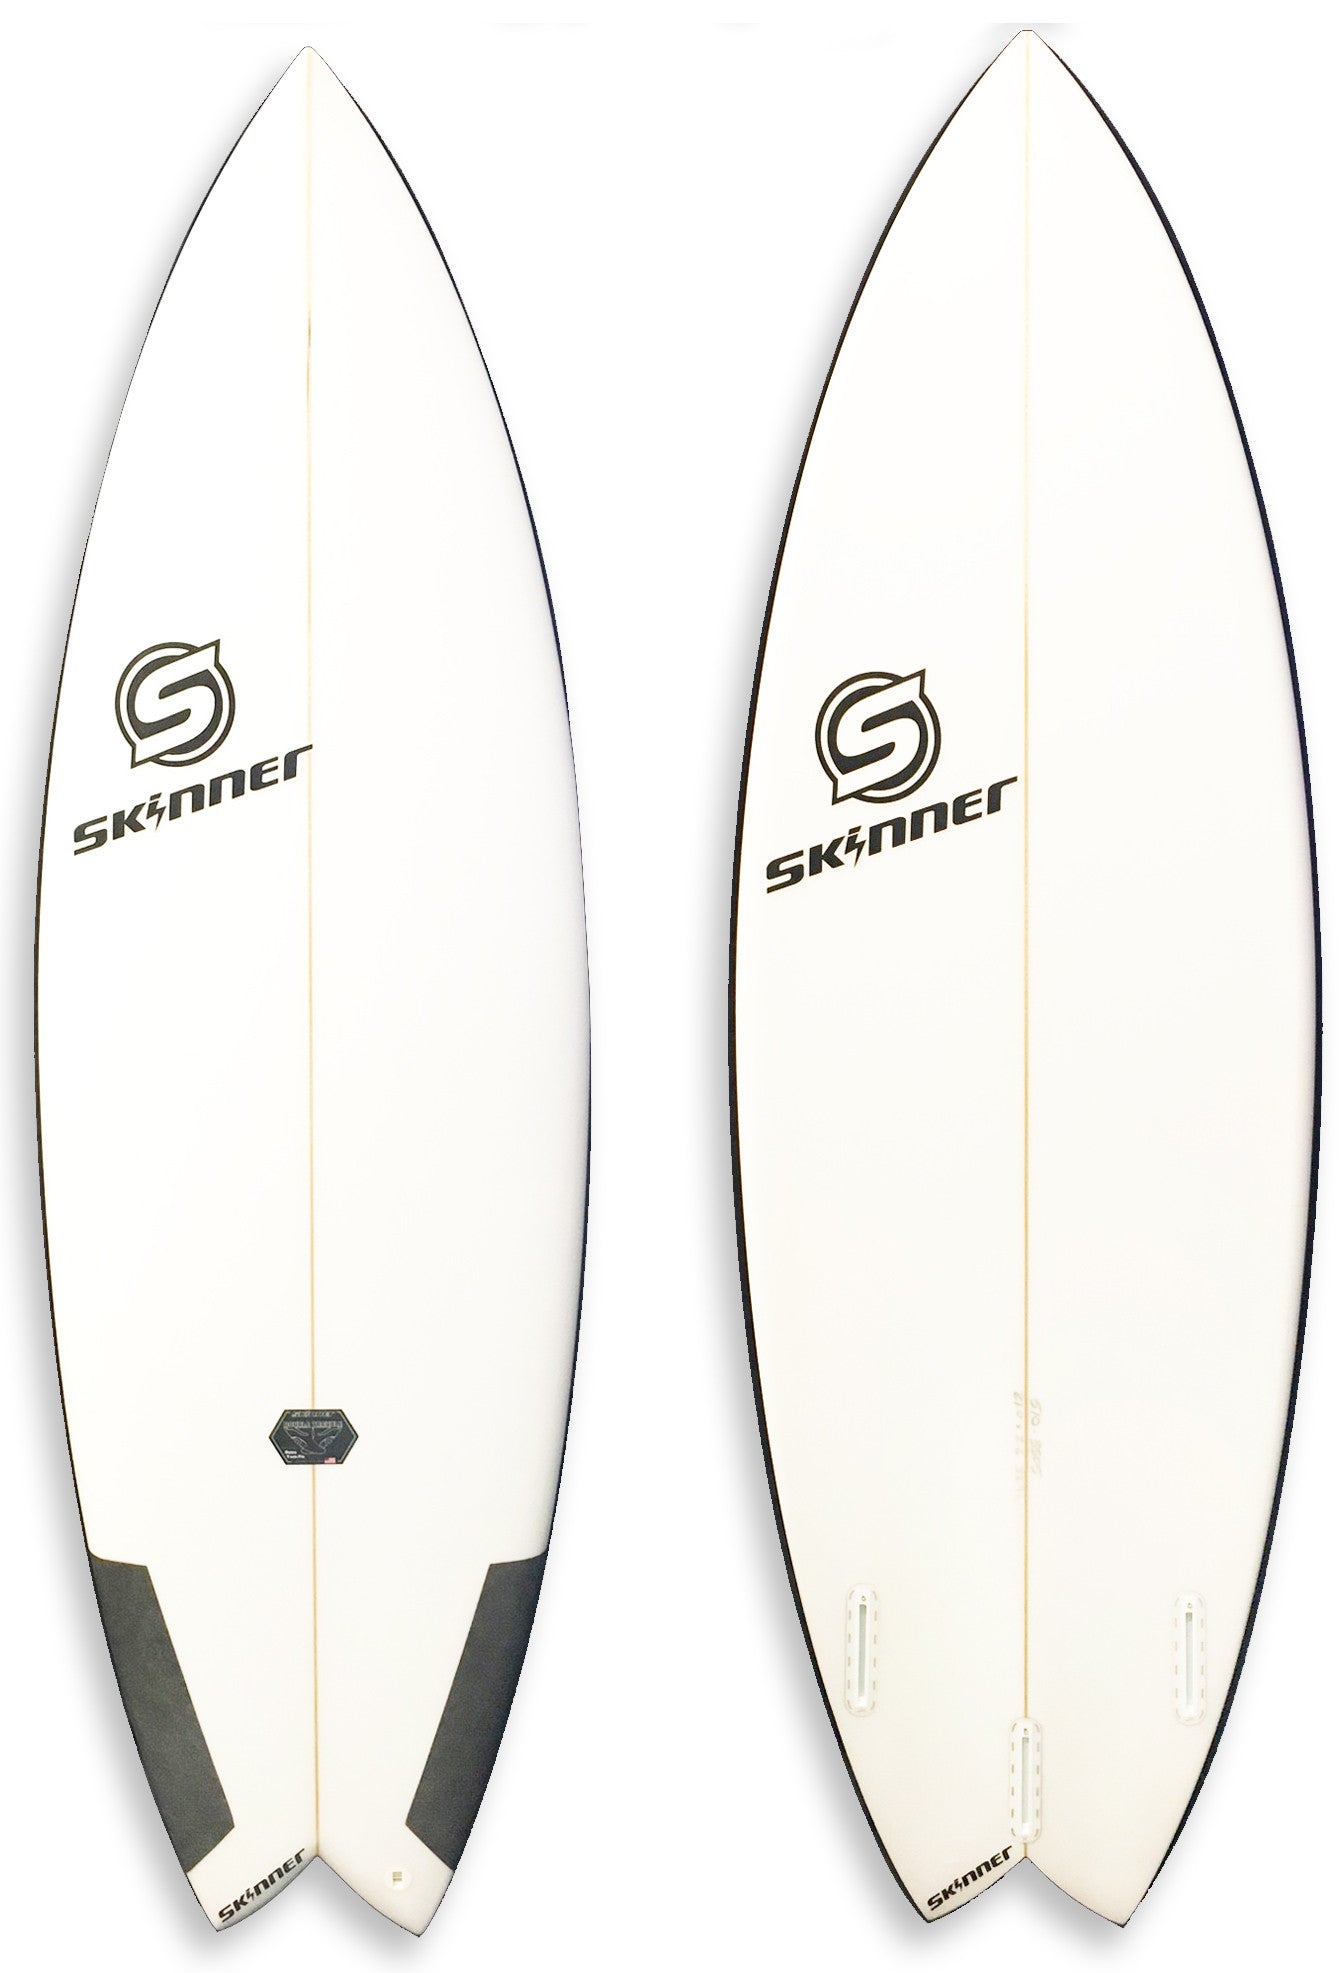 SOLD Skinner Double Trouble Performance Twin Fin+ Surfboard 5'10 x 21" x 2 5/8" 33.3 Liters Surfboard